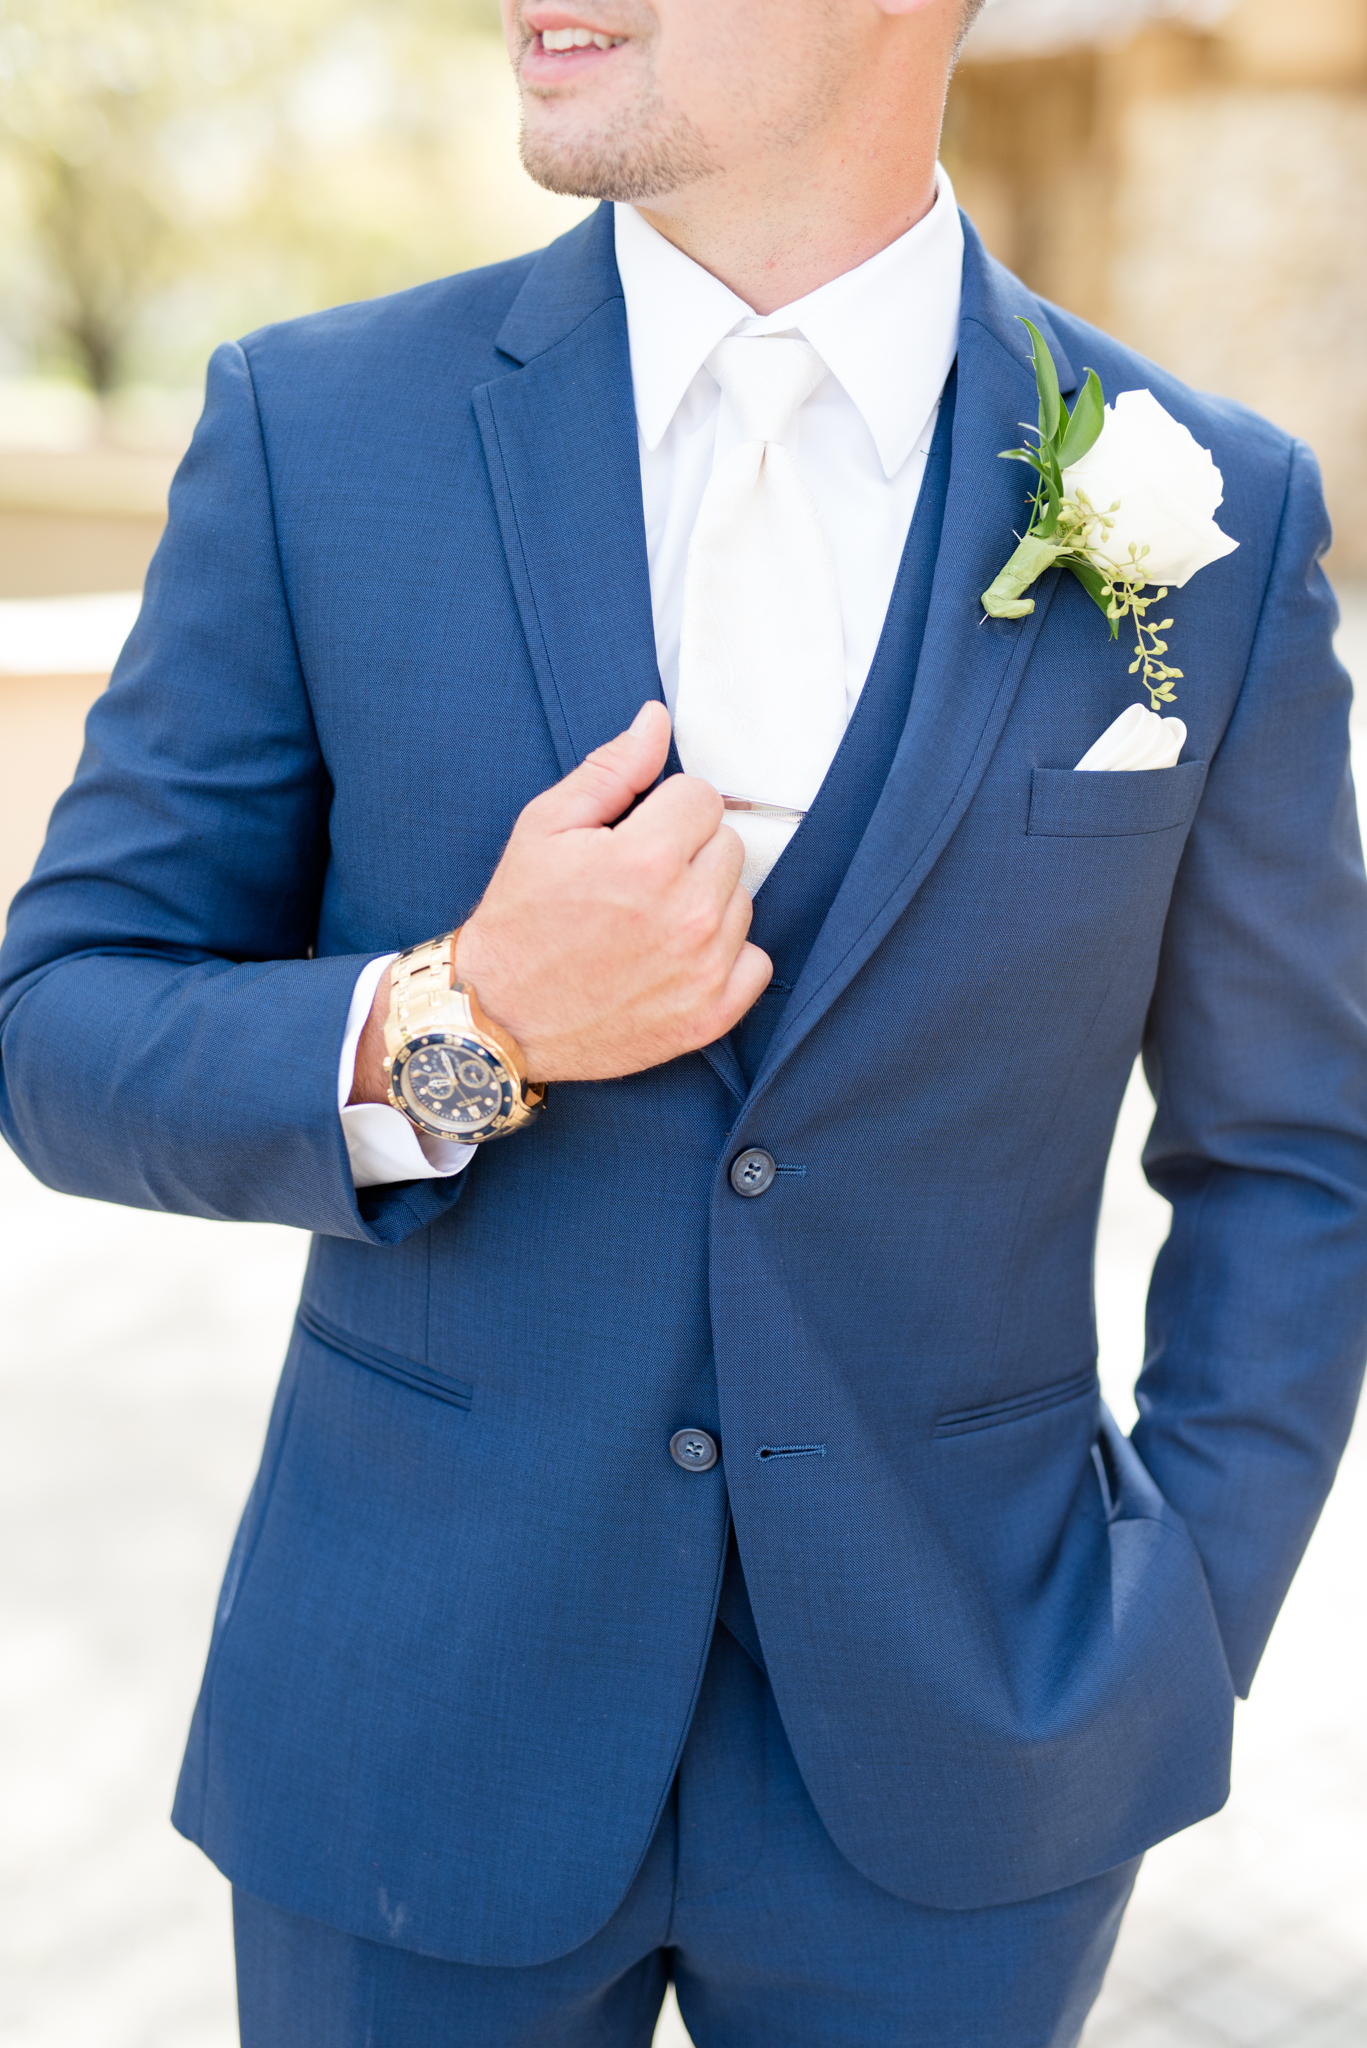 Closeup of groom's suit.